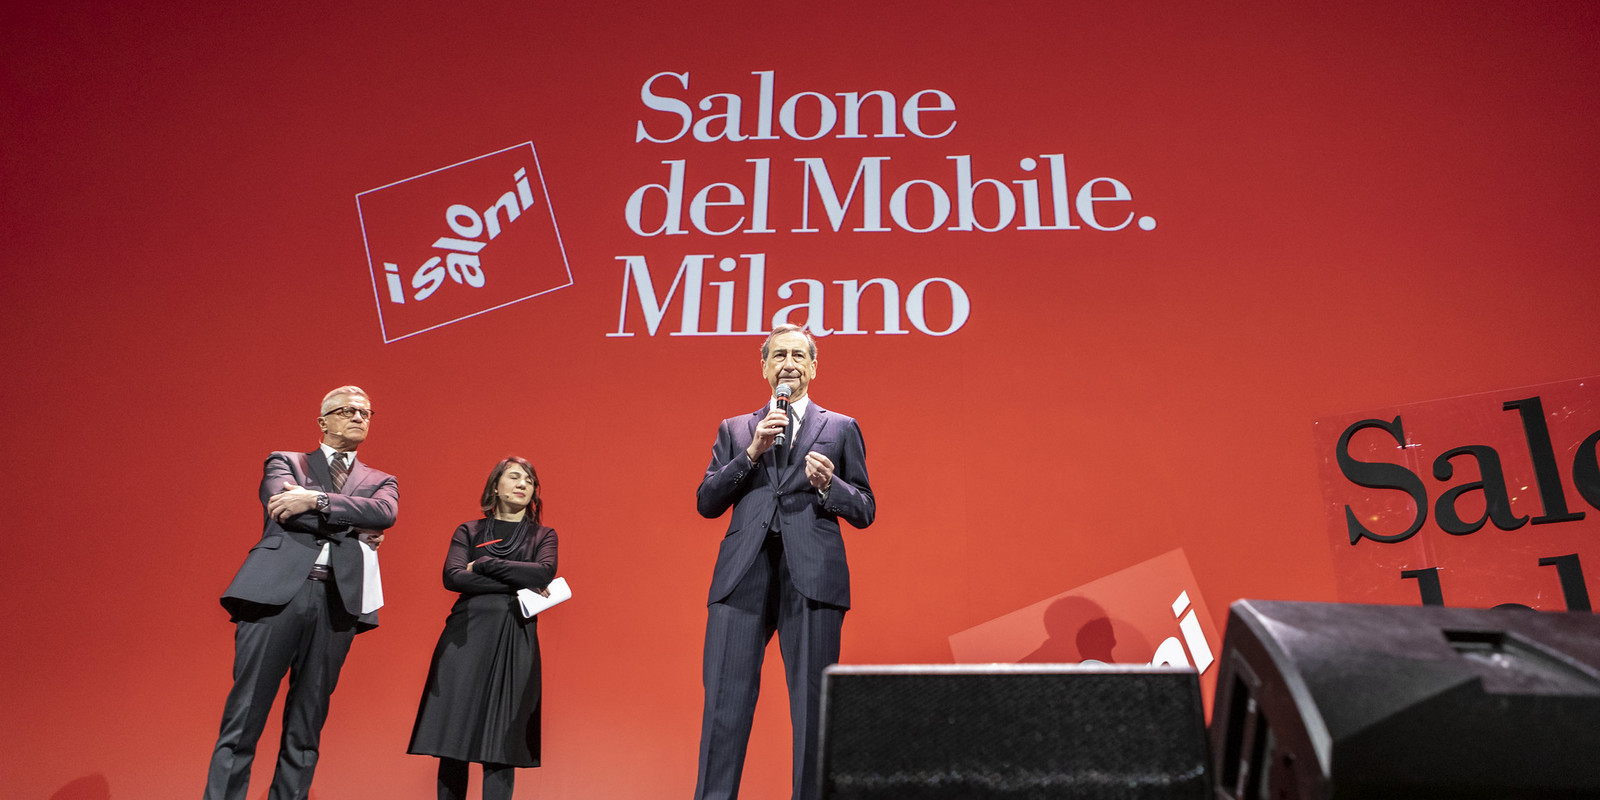 Salone del Mobile.Milano vom 07. - 12. Juni 2022